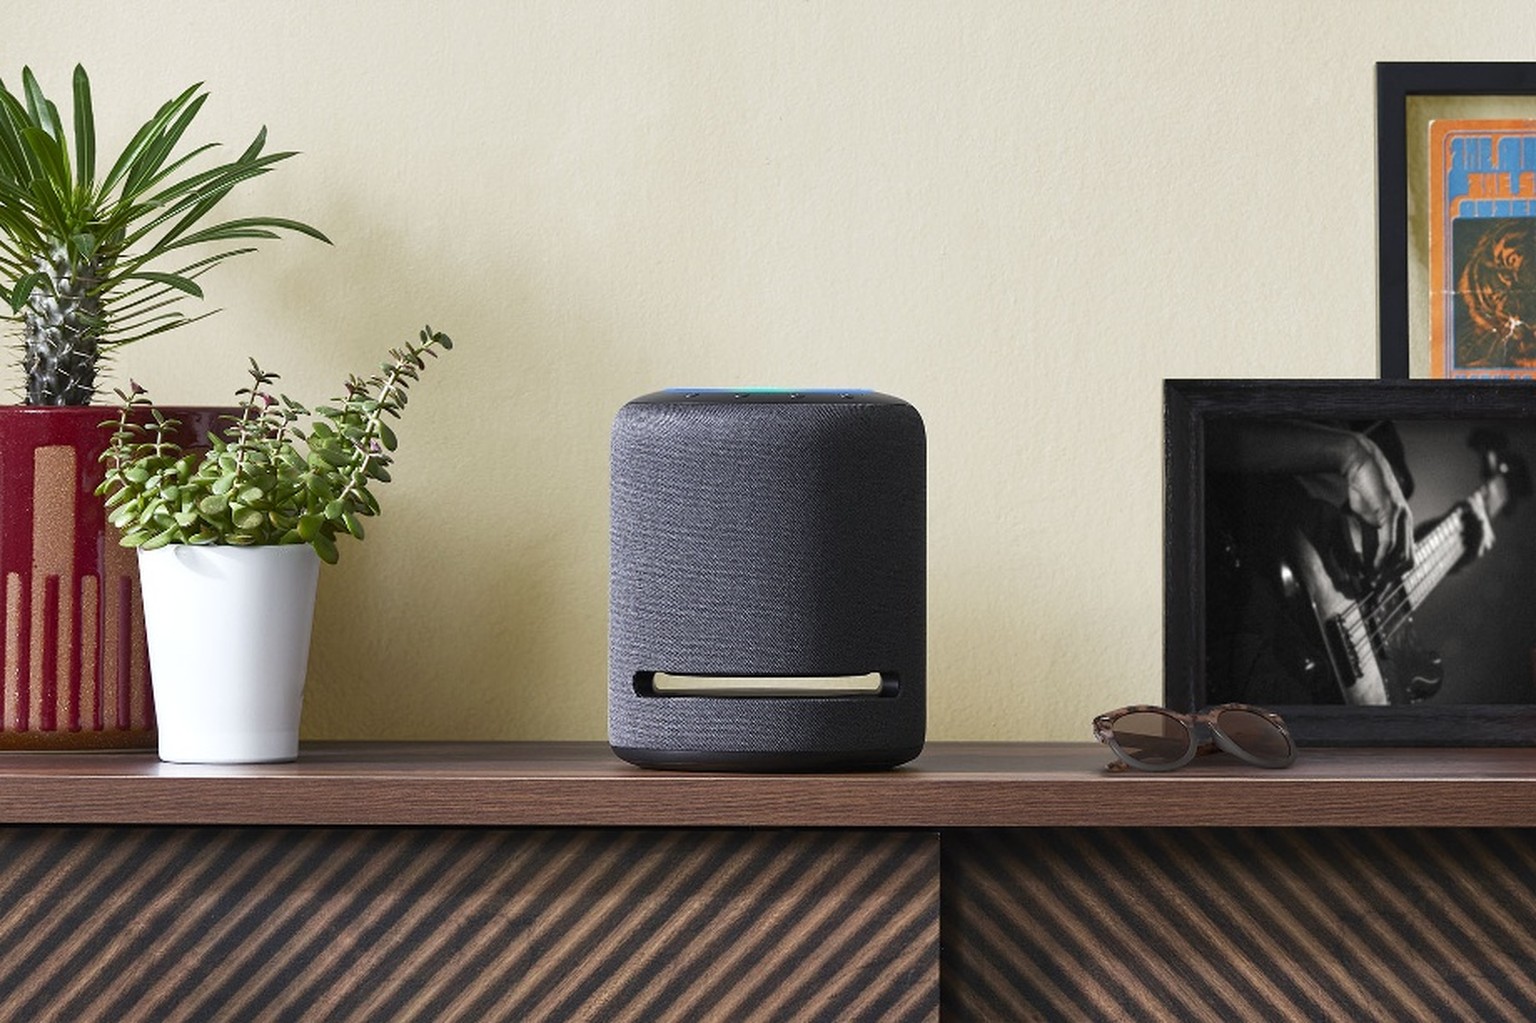 Ein Amazon Echo Studio steht auf einer Wohnzimmeranrichte.